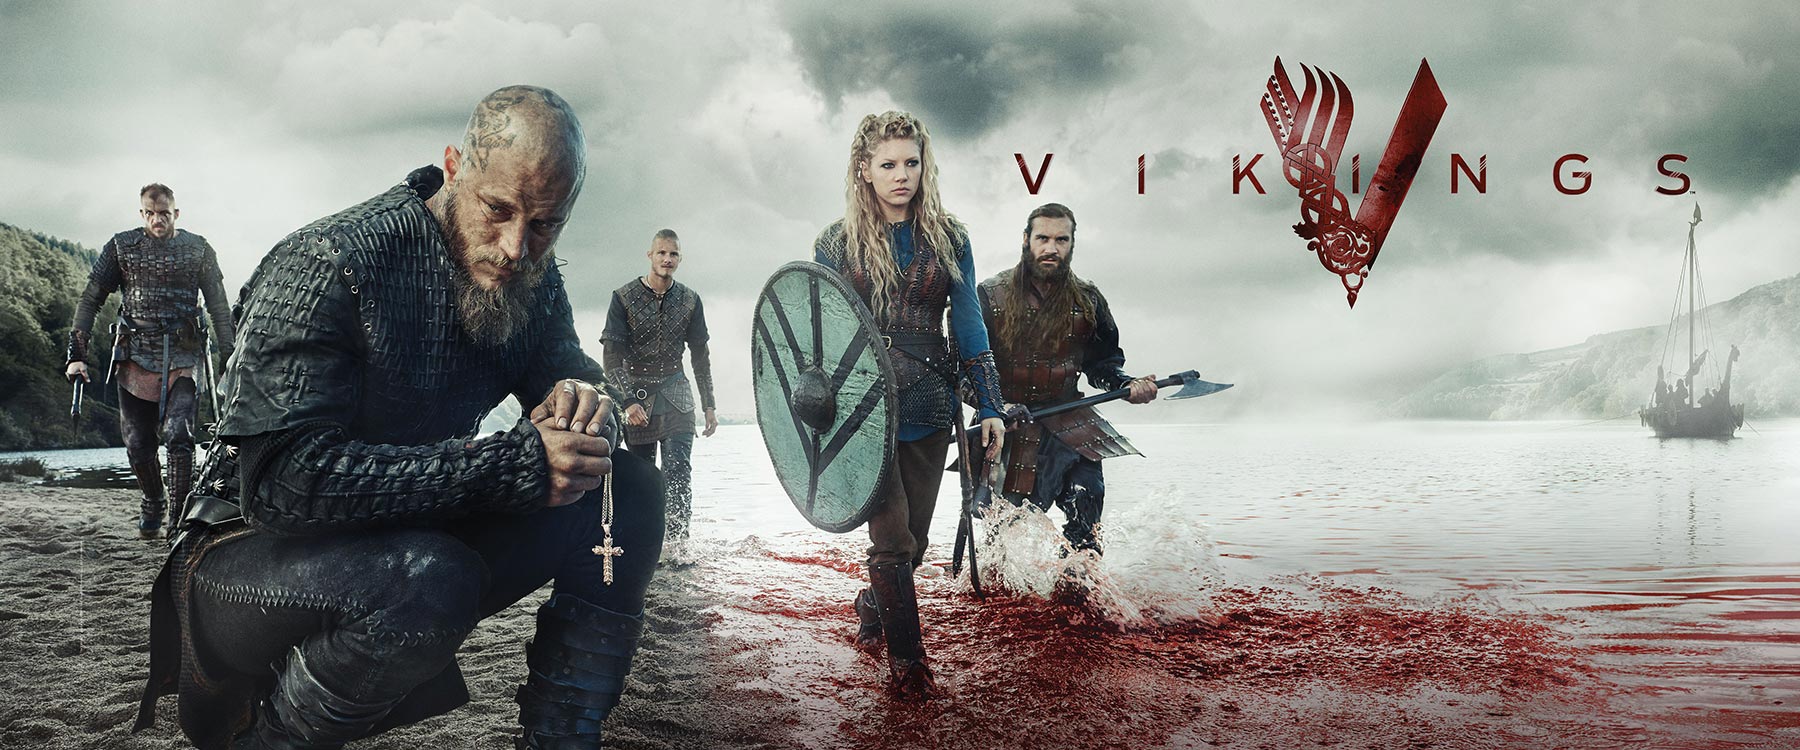 Vikingek (Vikings)